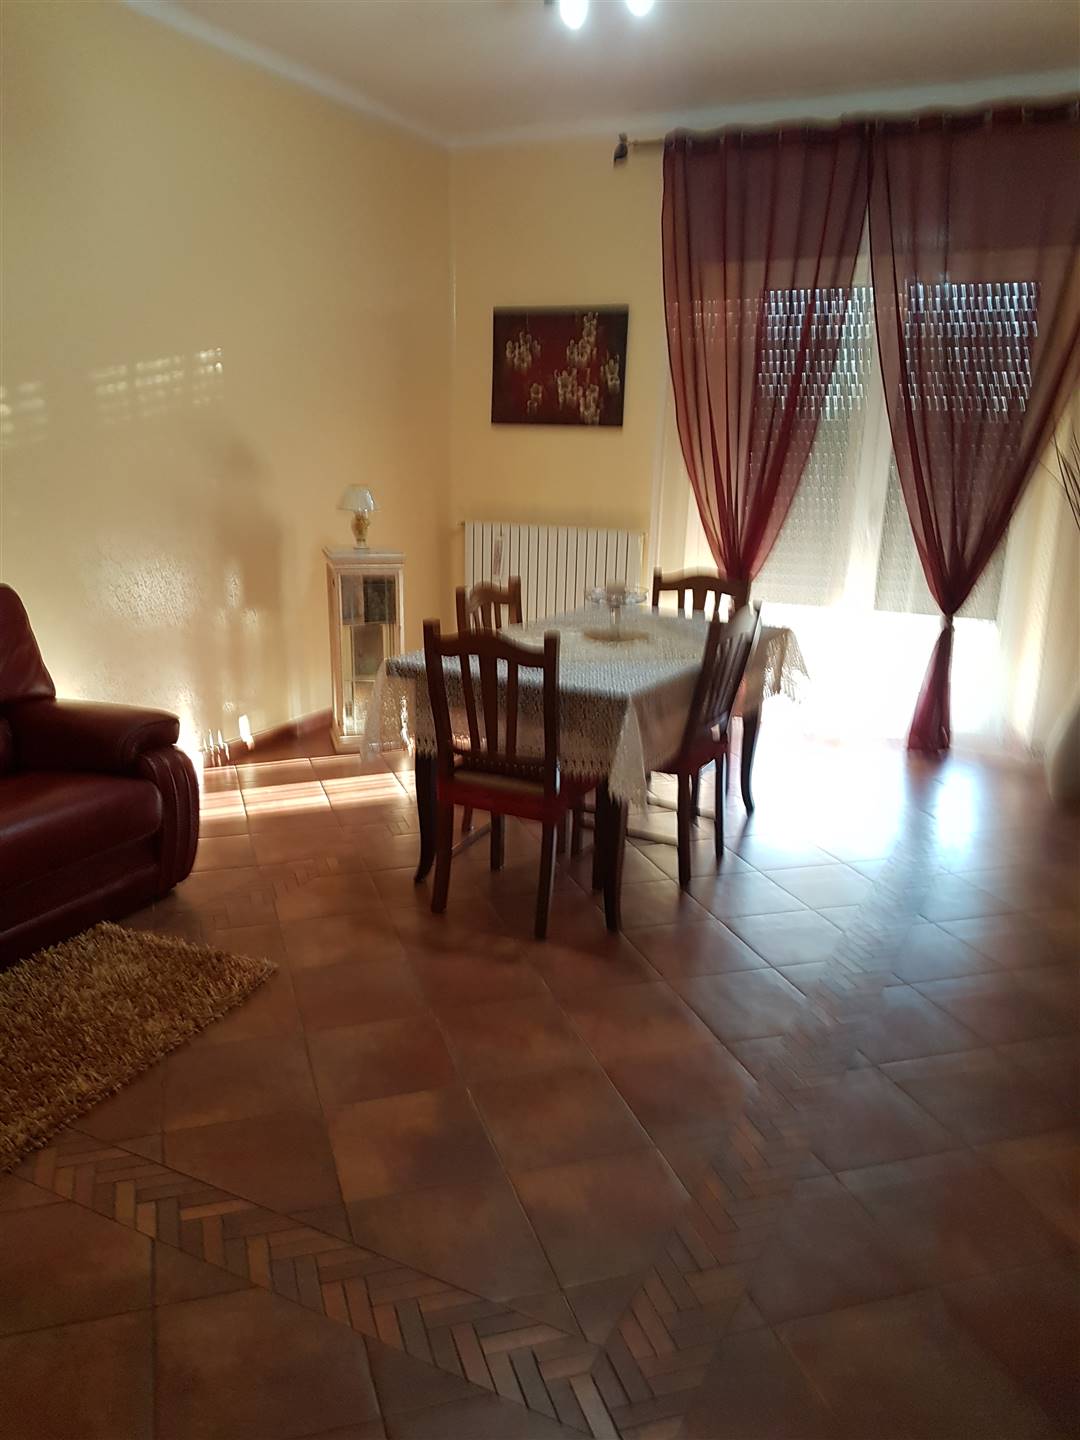 Appartamento in vendita a Latiano, 7 locali, prezzo € 85.000 | CambioCasa.it